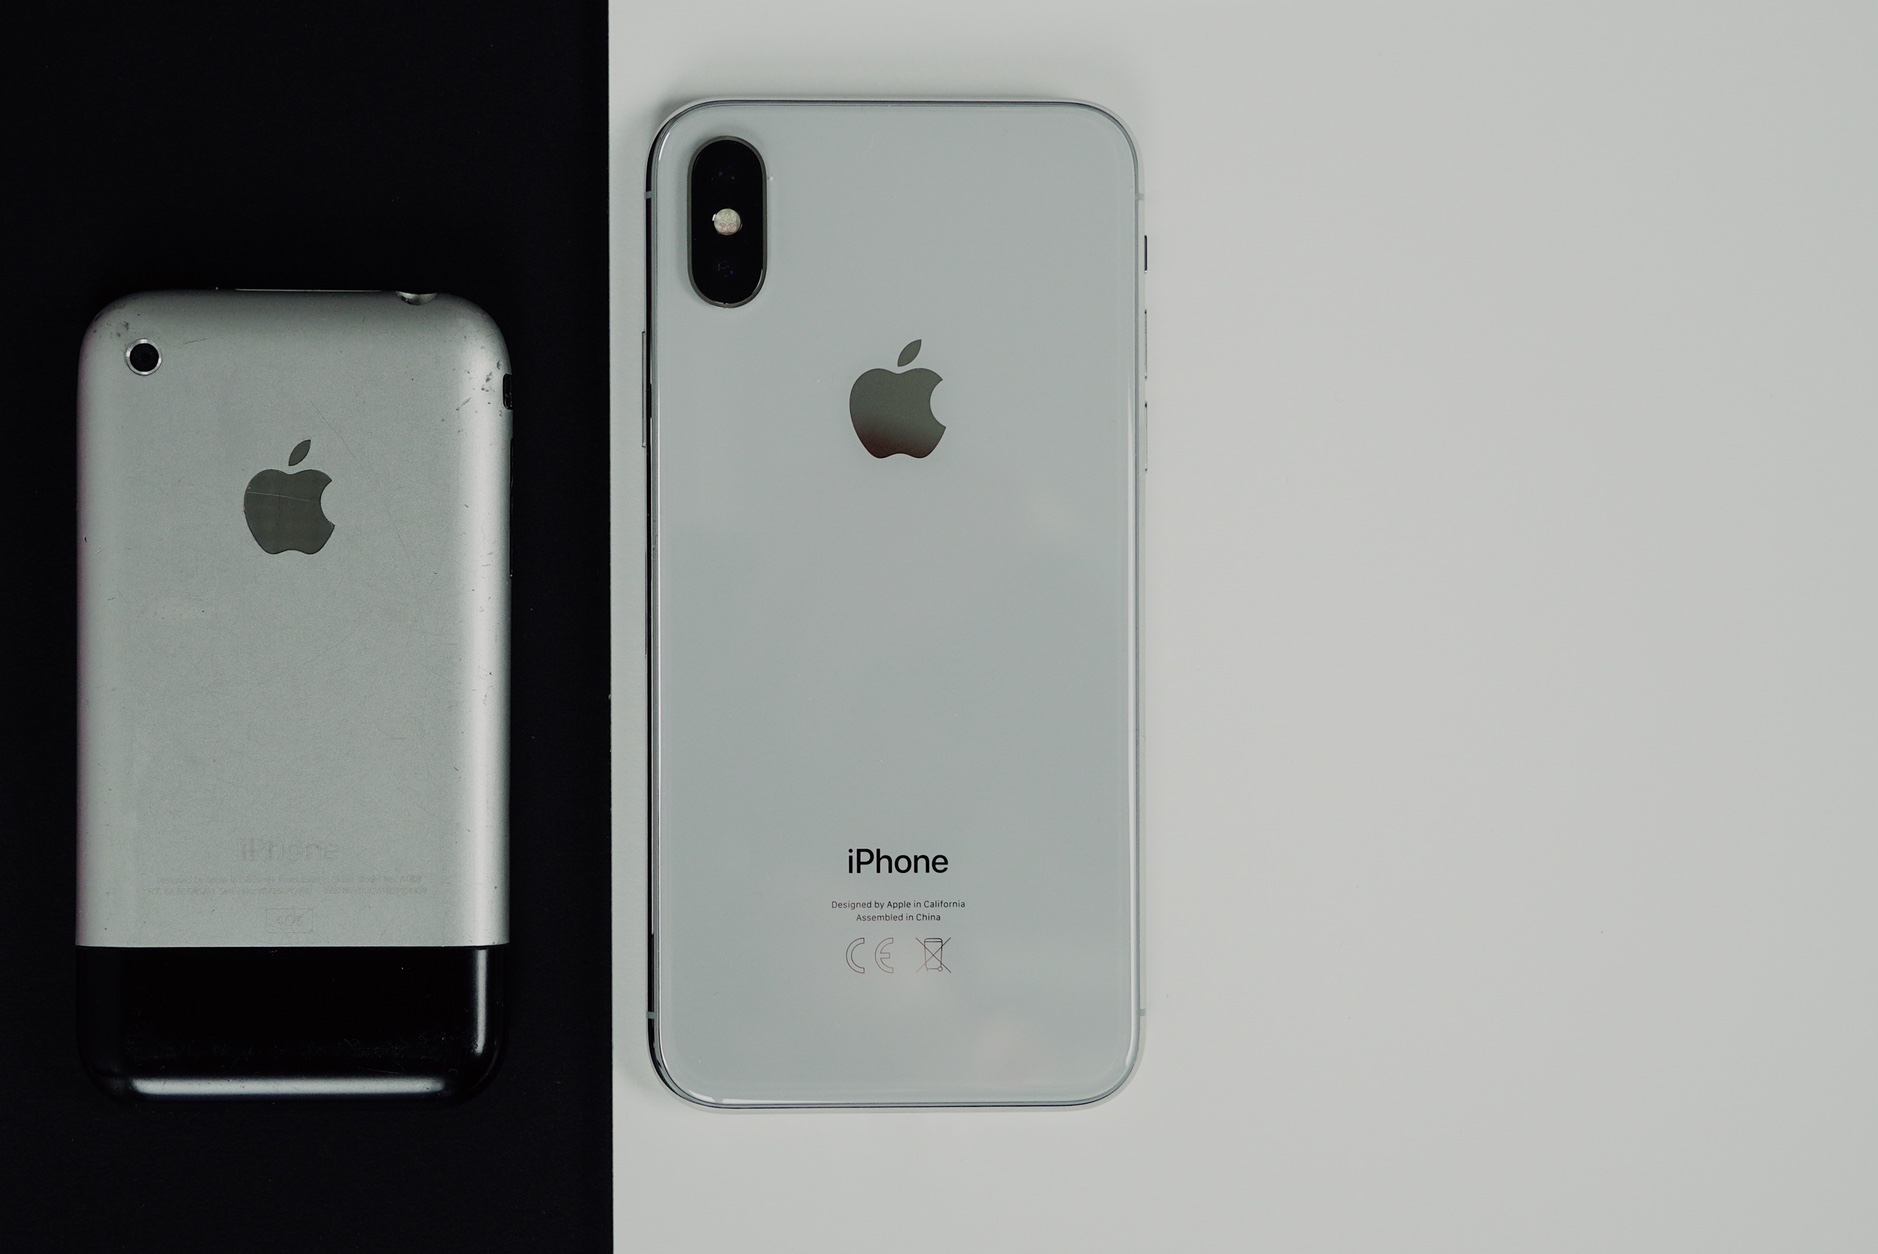 Bild zeigt iPhone Classic neben iPhone X.